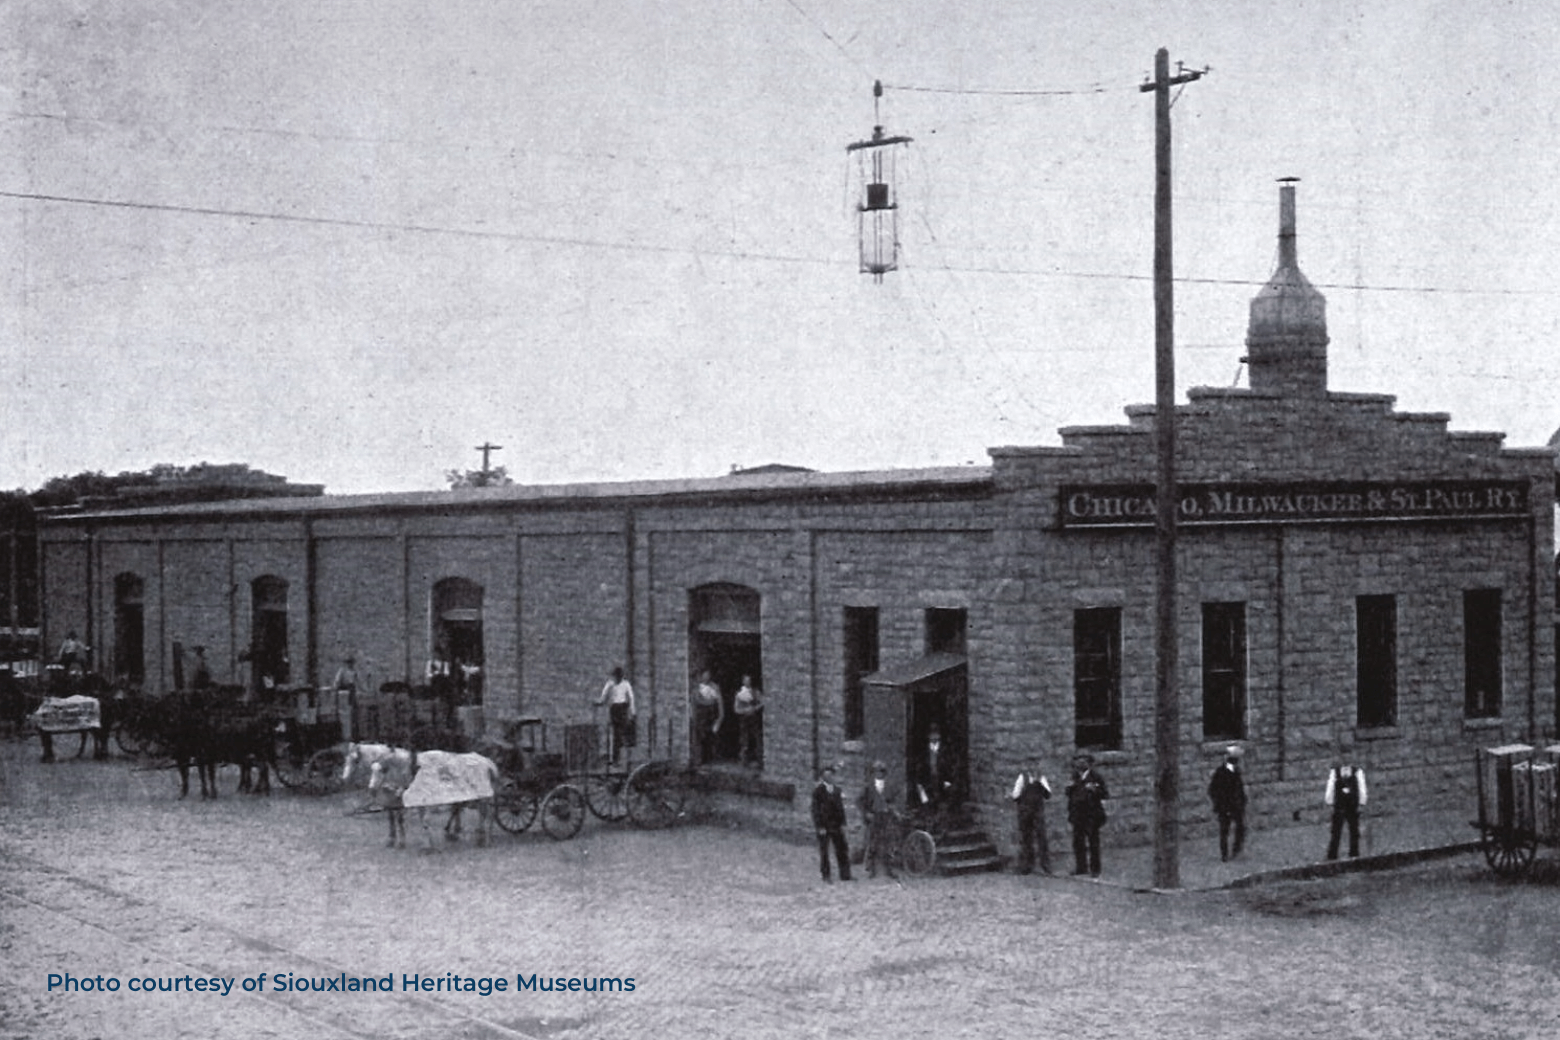 Historic Milwaukee Freight Depot